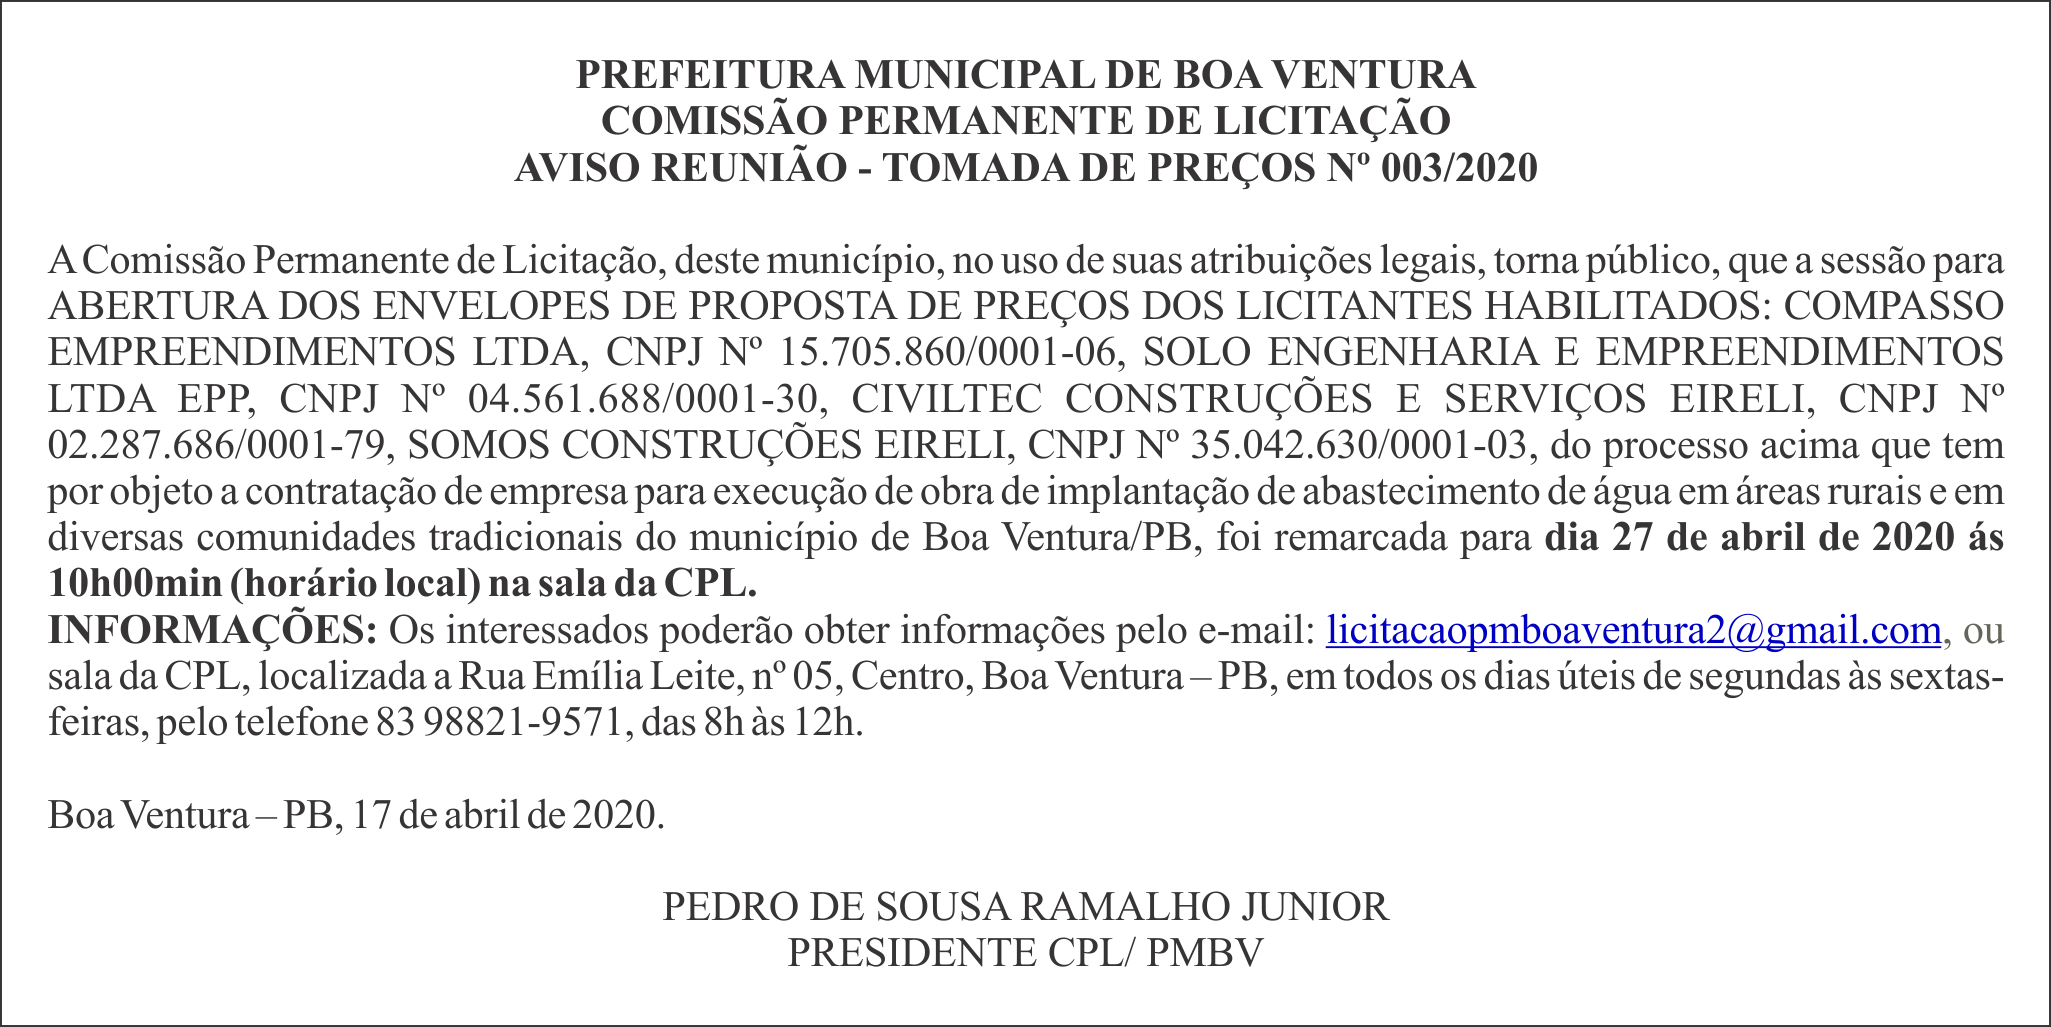 PREFEITURA MUNICIPAL DE BOA VENTURA – AVISO REUNIÃO – TOMADA DE PREÇOS Nº 003/2020